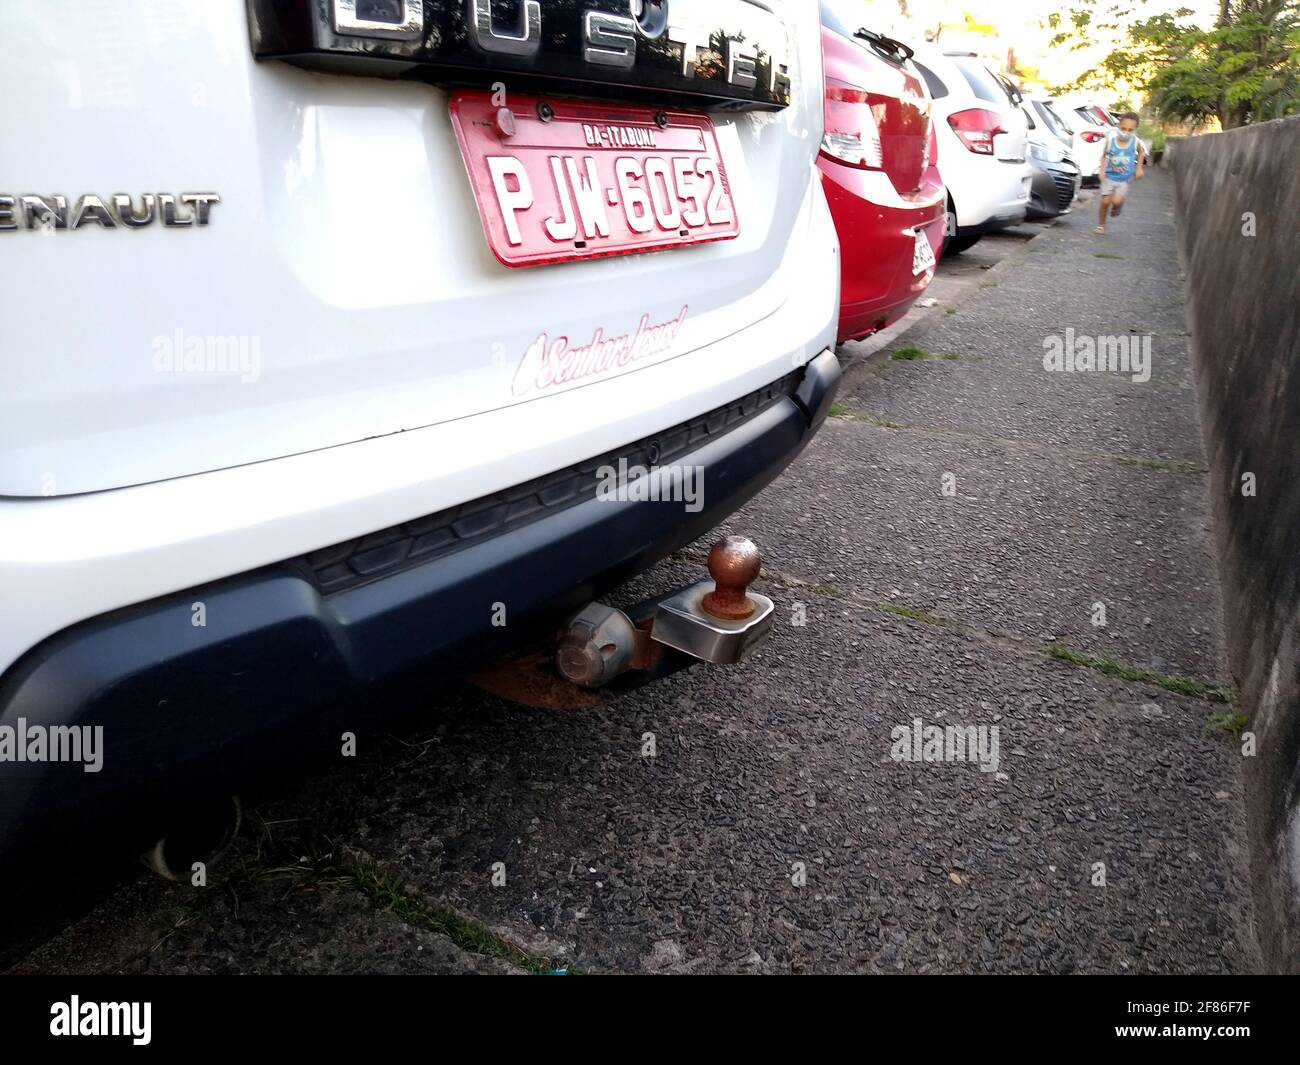 salvador, bahia, brésil - 7 décembre 2020 : un attelage de remorque est vu à l'arrière d'un véhicule dans la ville de Salvador. *** Légende locale *** Banque D'Images